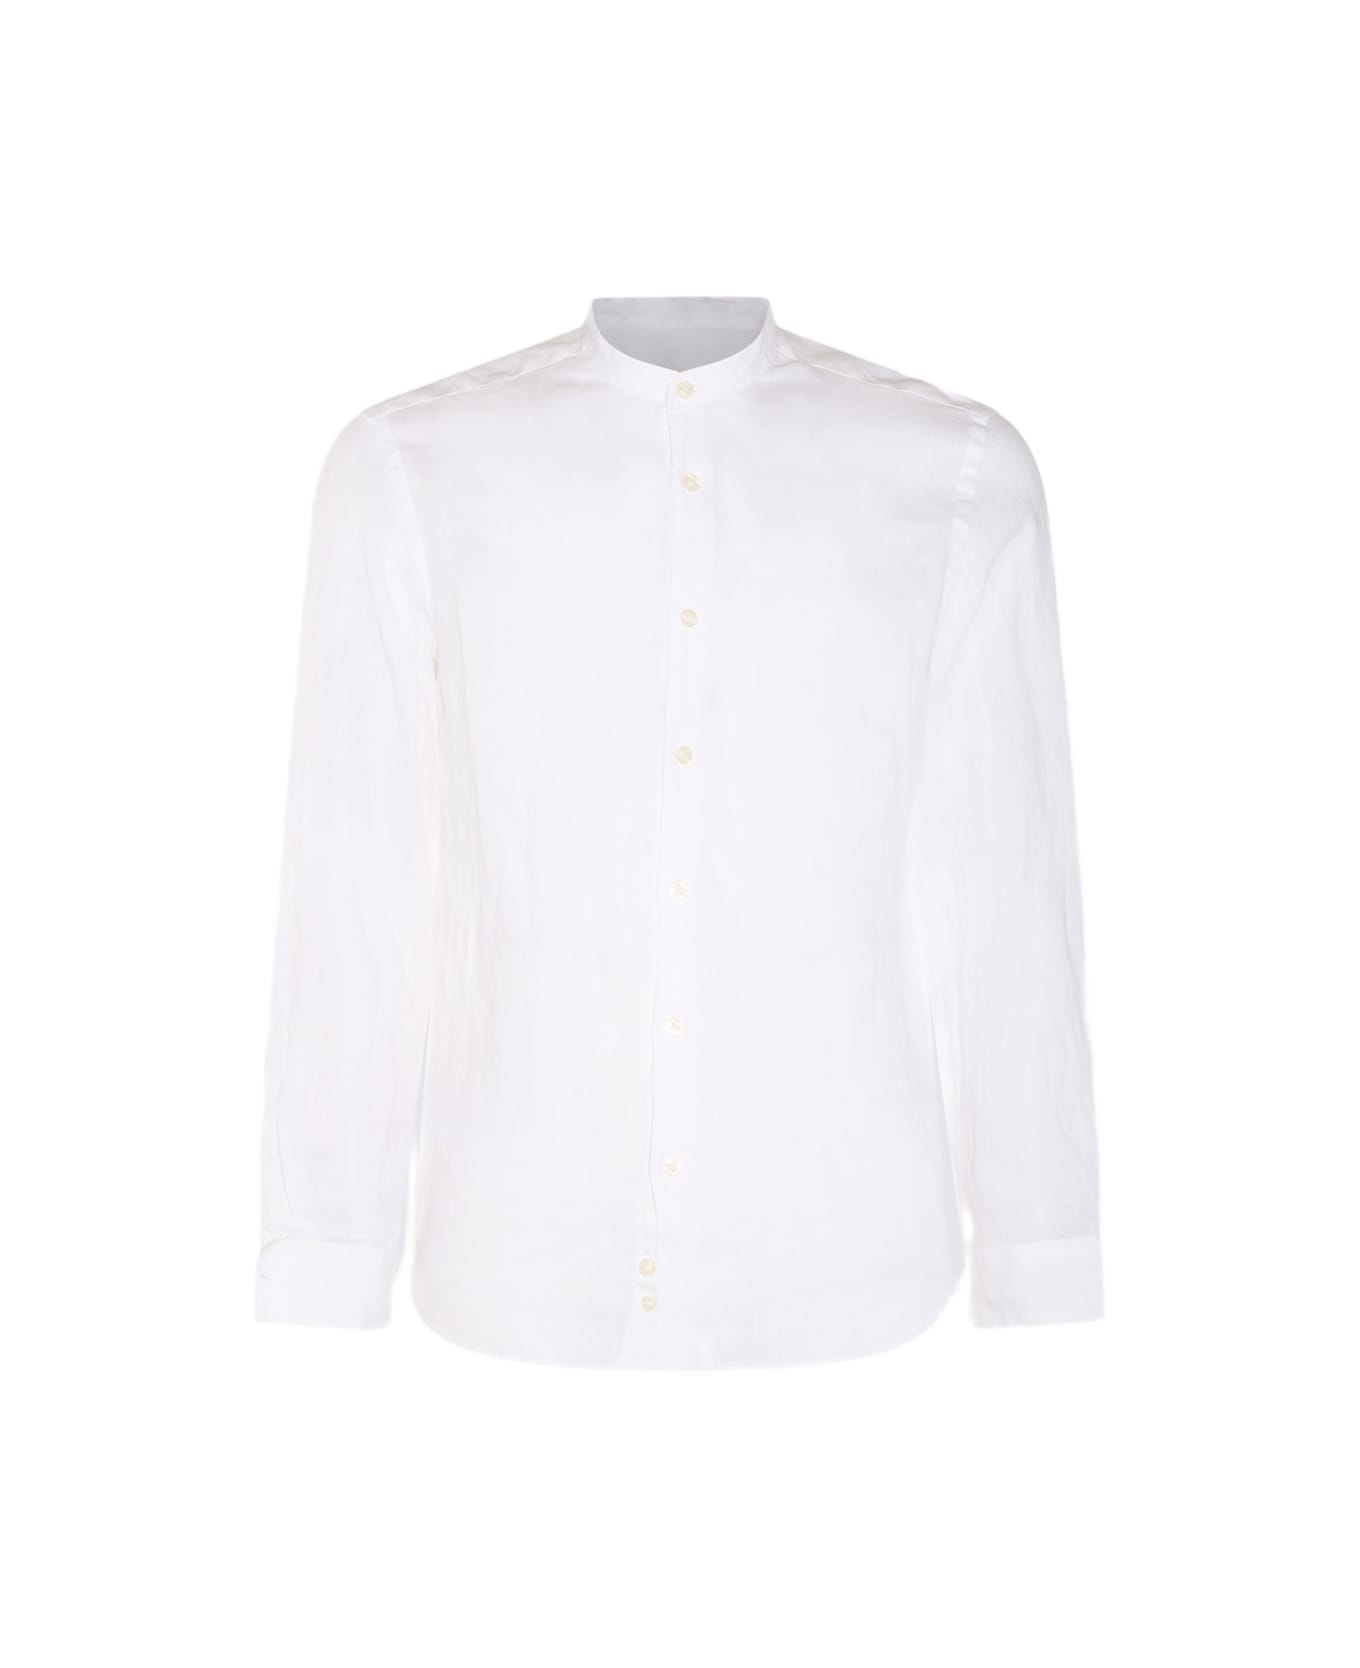 Altea White Linen Shirt - White シャツ